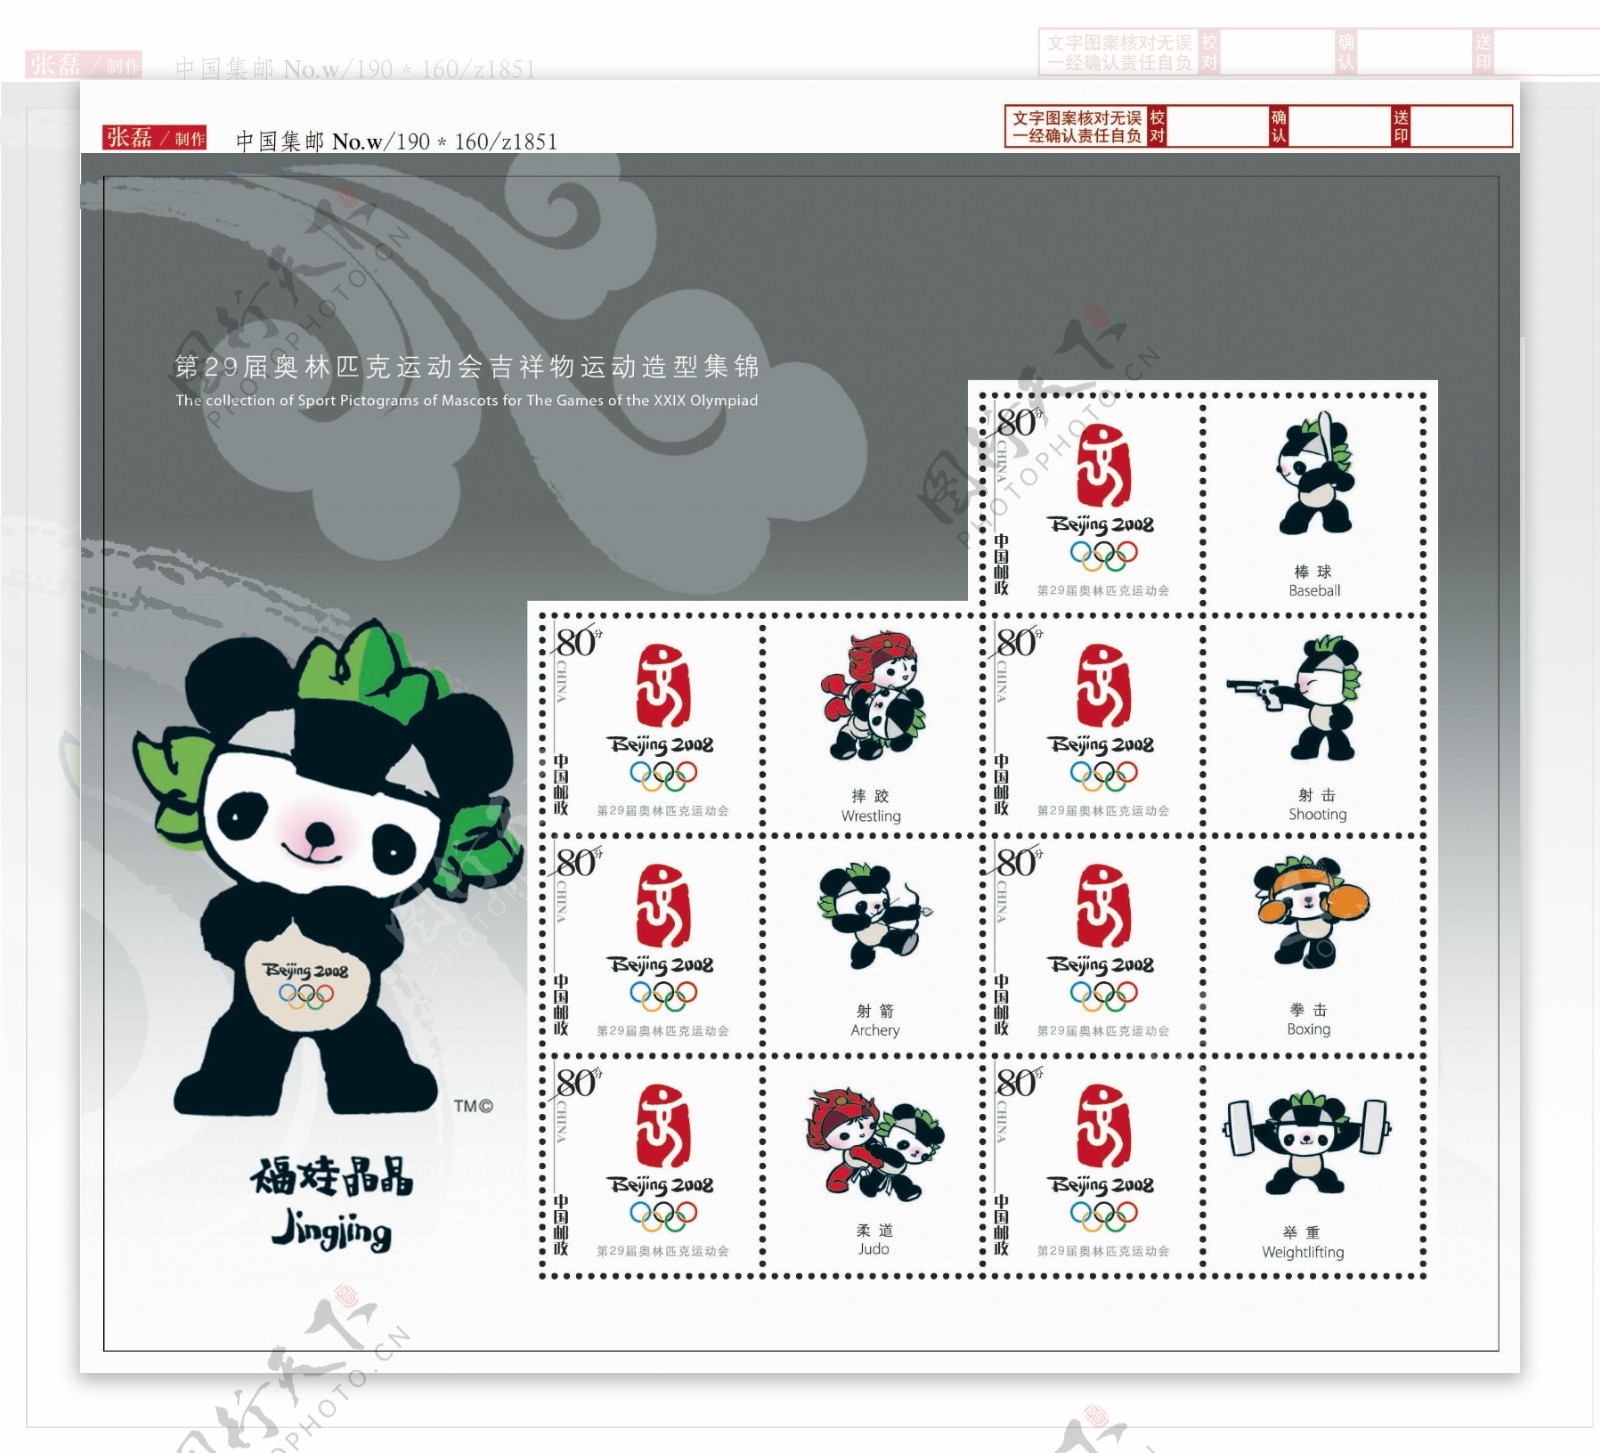 奥运个性化邮票通用版图片